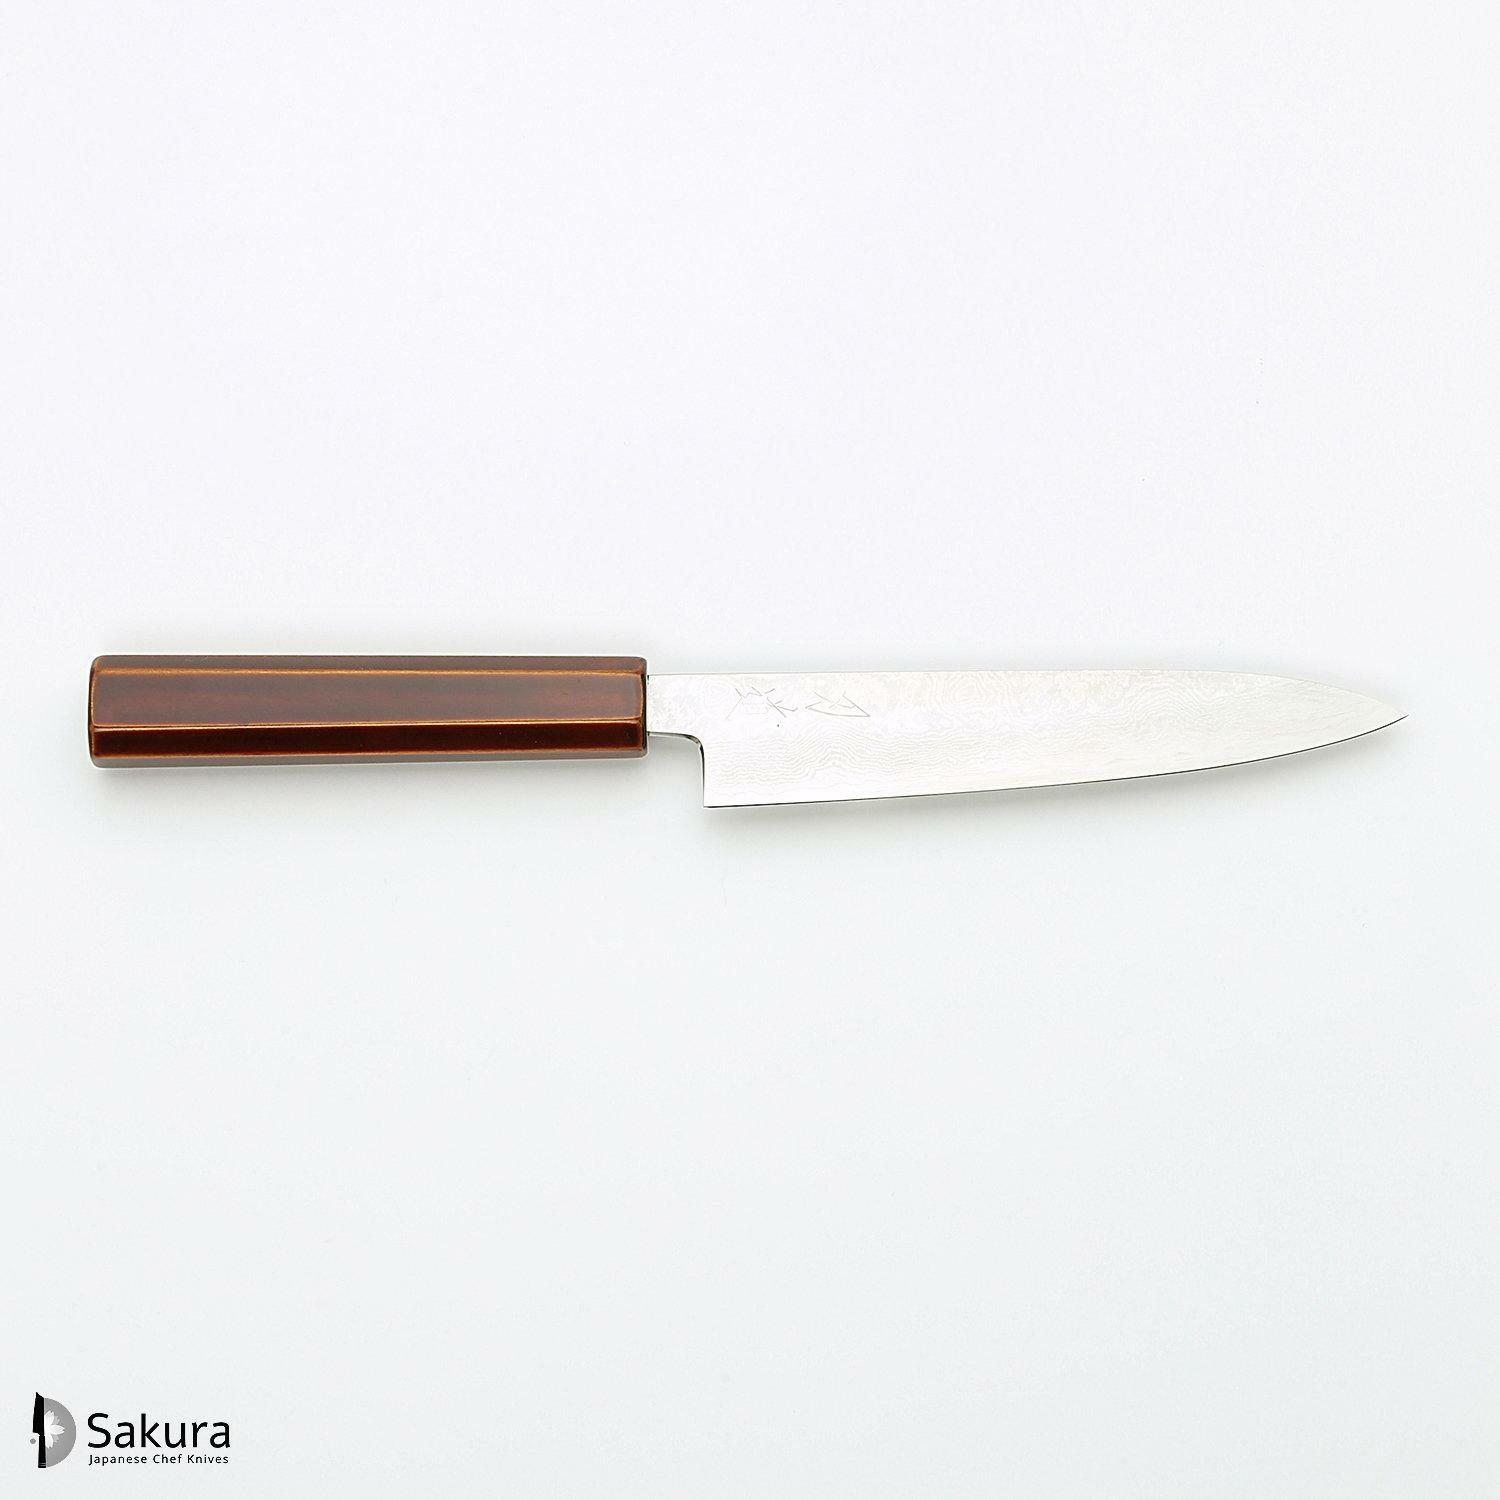 סכין עזר קטנה רב-תכליתית פֶּטִי 150מ״מ מחושלת בעבודת יד 3 שכבות: פלדת פחמן יפנית מתקדמת מסוג Ginsan Silver#3 עטופה פלדת אל-חלד בגימור דמשק גימור דמשק האדו יפן